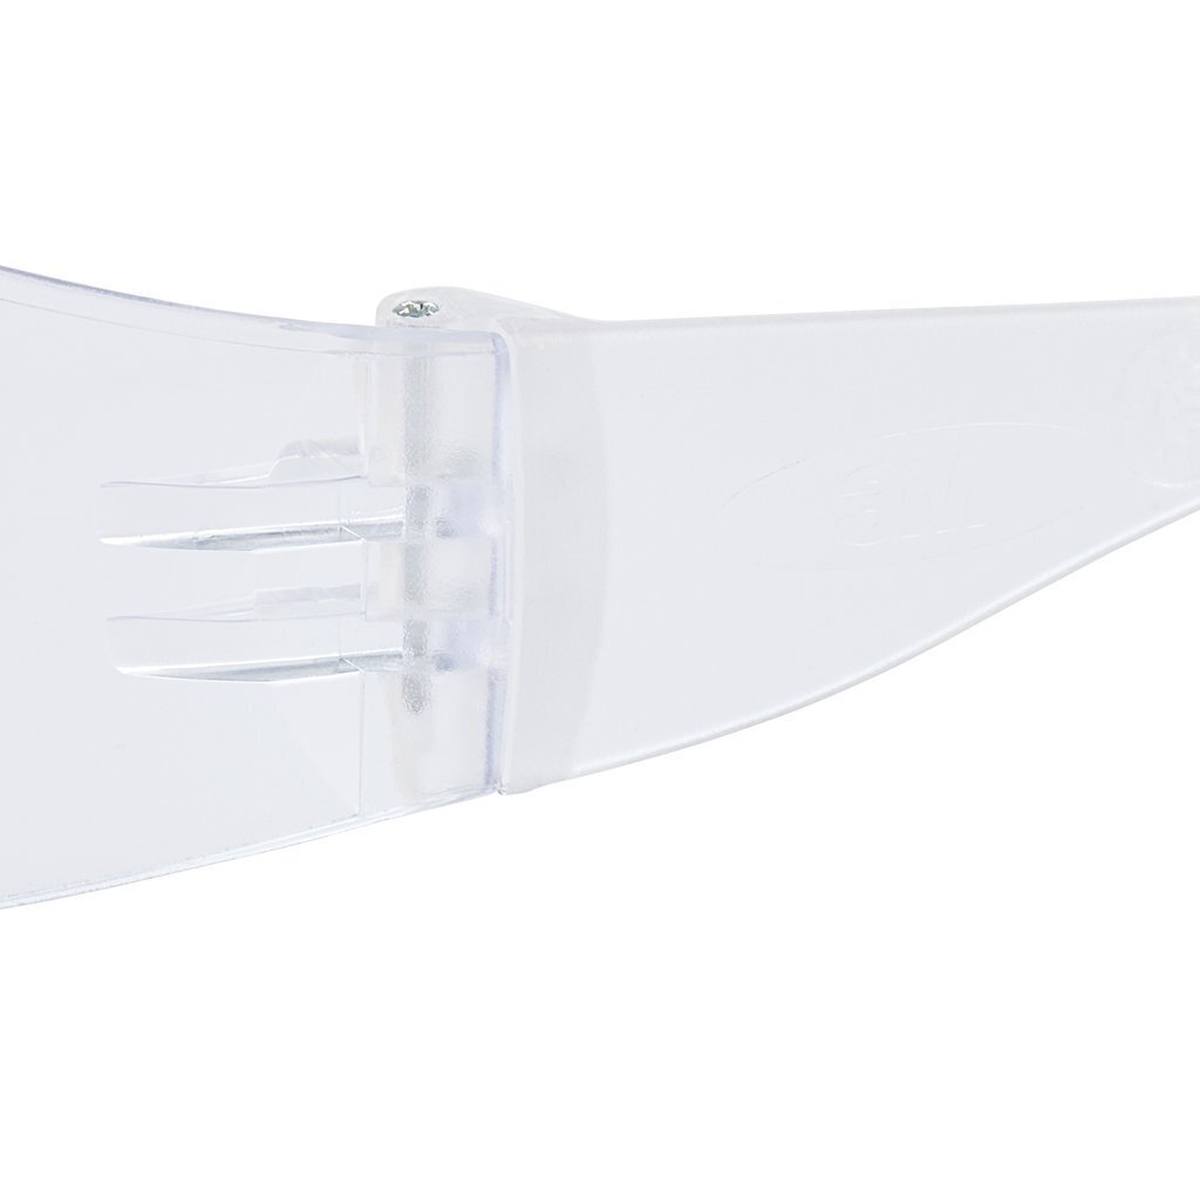 occhiali di sicurezza 3M Virtua con rivestimento antigraffio, lenti trasparenti, 71500-00001